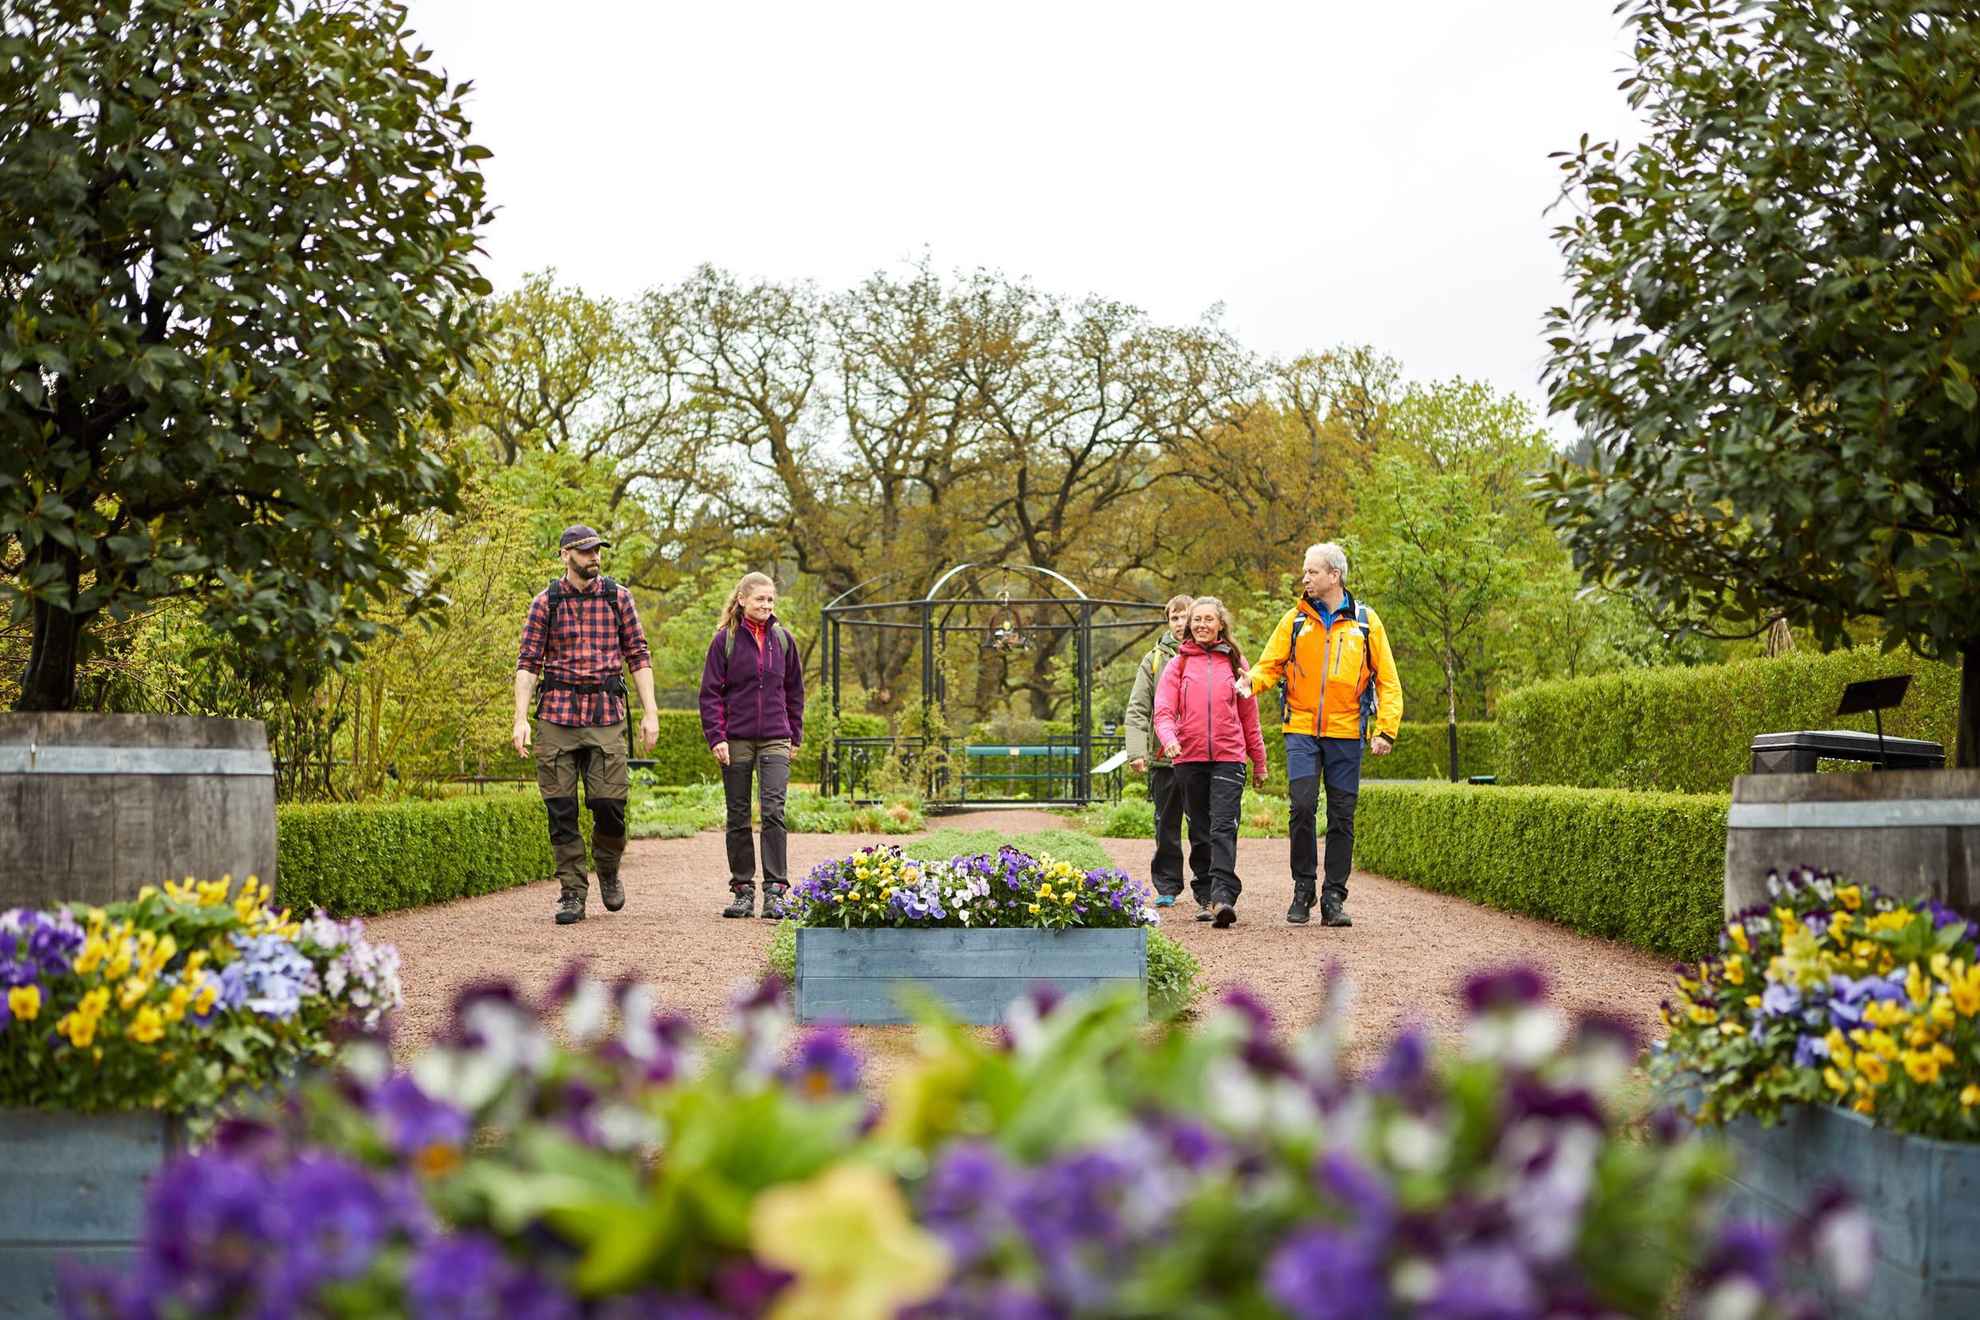 Een groep van vijf mensen wandelen in een mooi aangelegde tuin. Paarse en gele bloemen in de voorrand van de afbeelding. Op de achtergrond zie je bomen en groen.